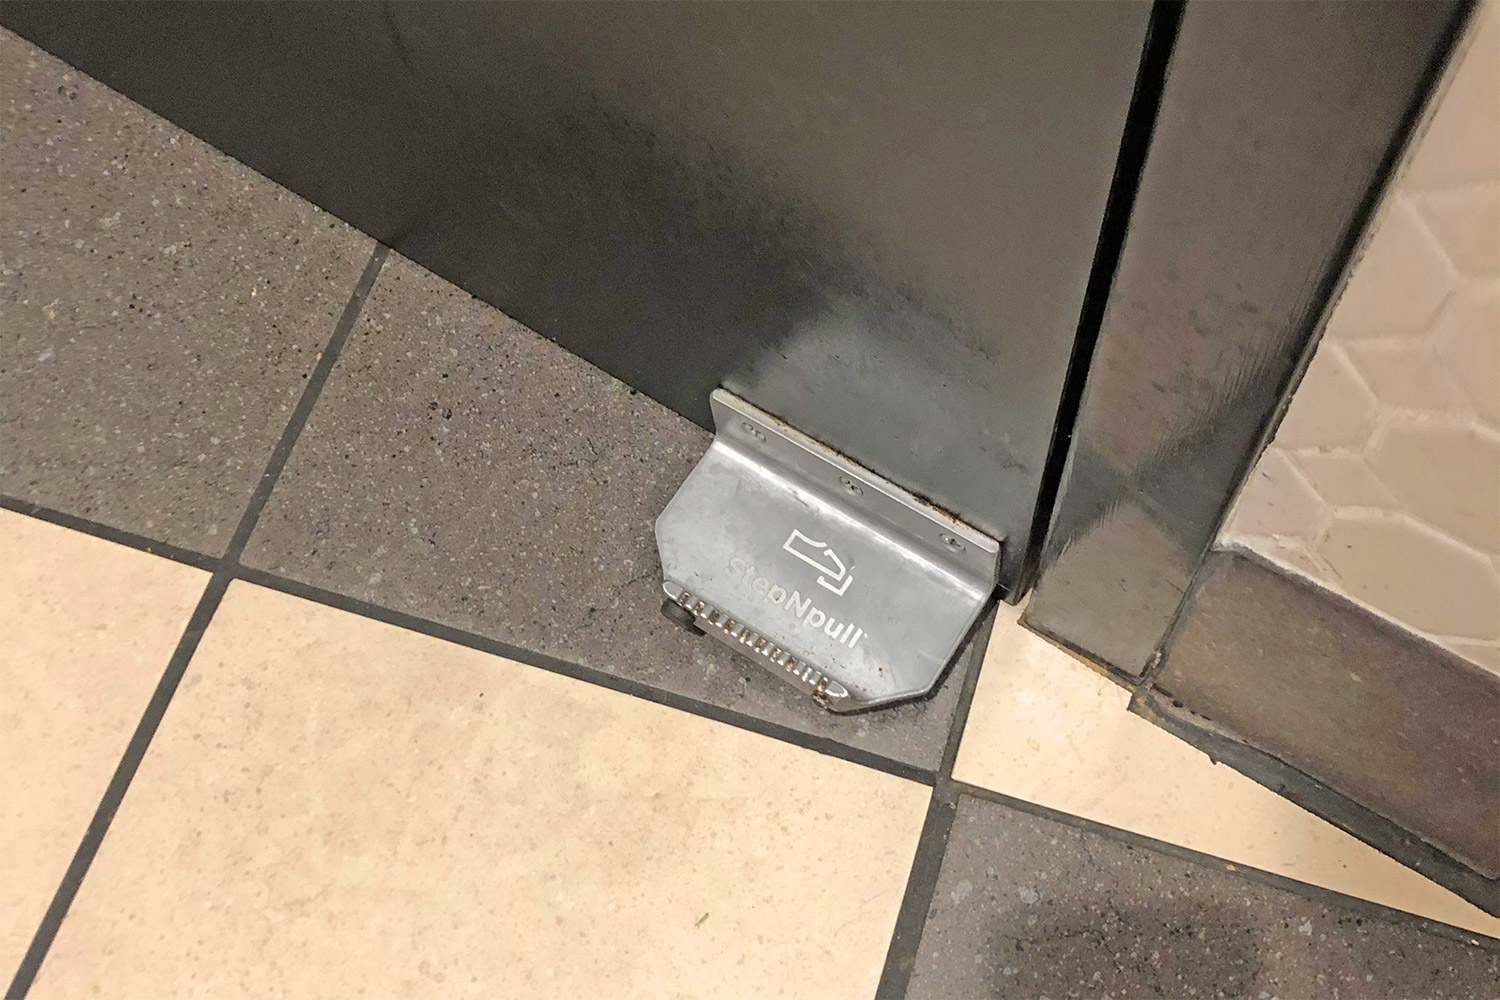 StepNPull Foot Door Handle - Open public bathroom doors with your foot